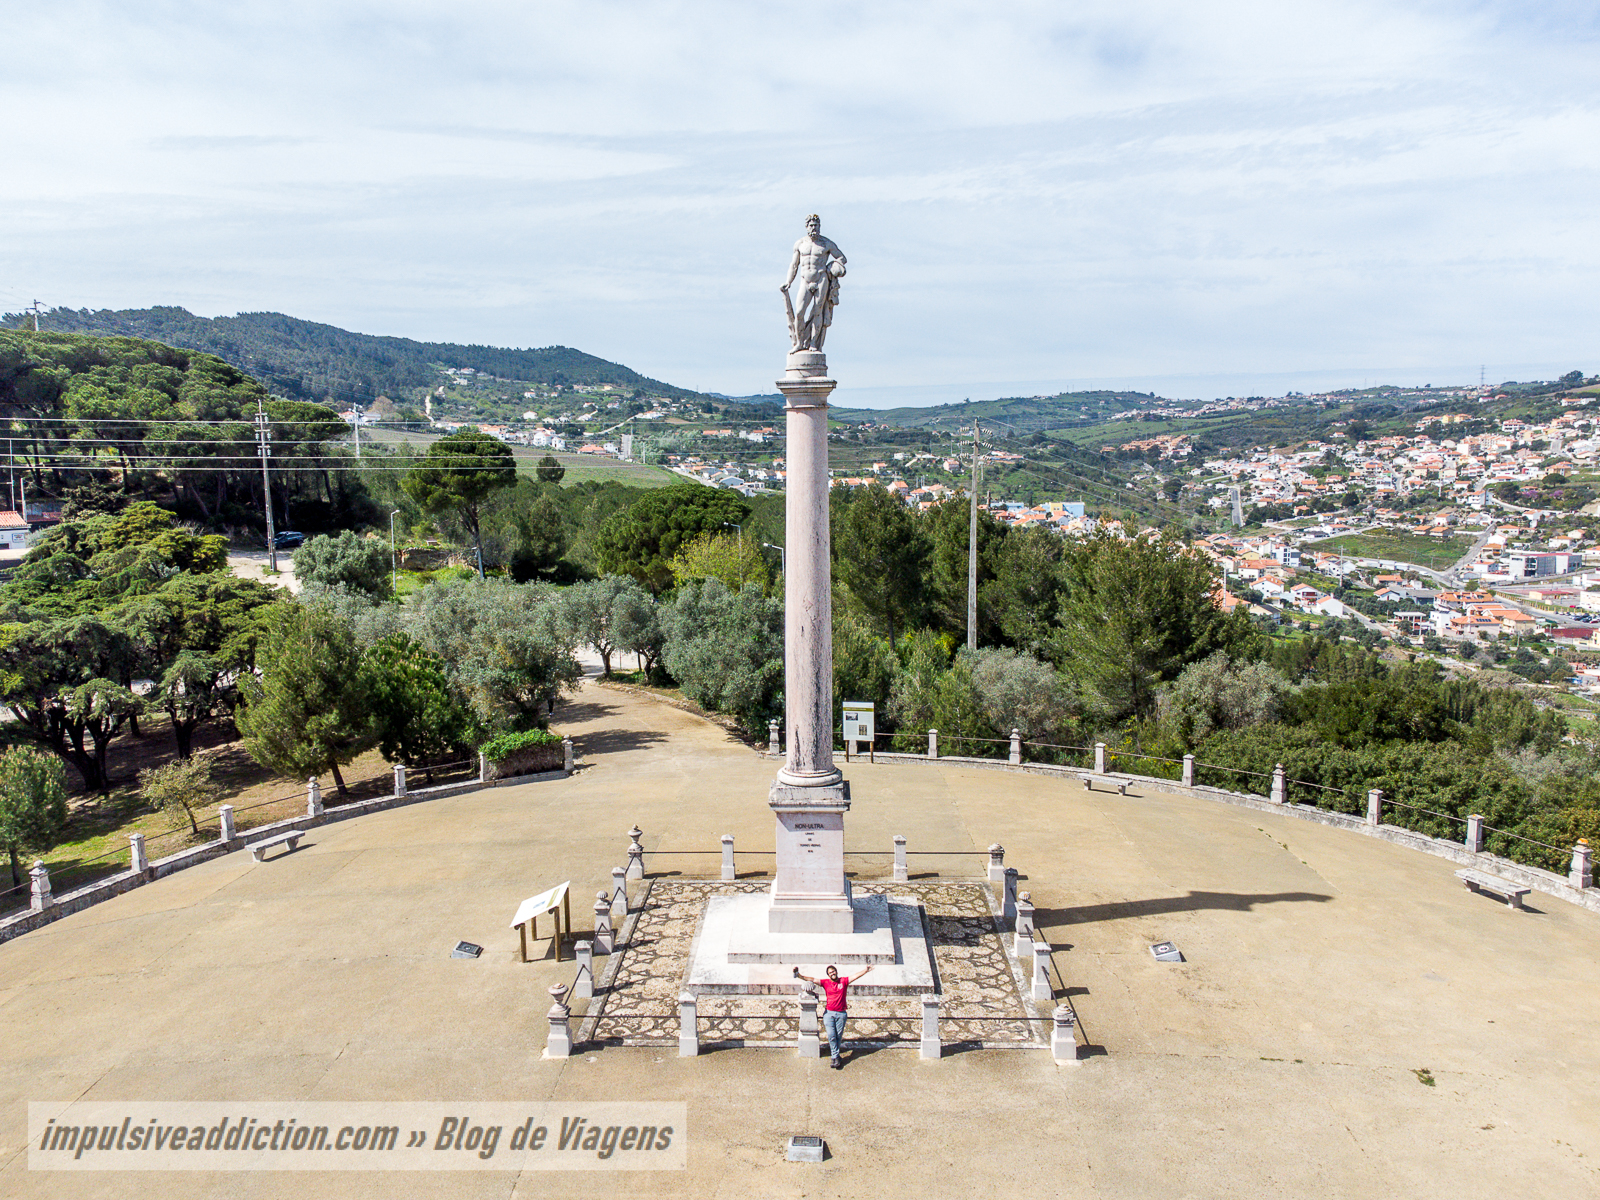 Miradouro de Alhandra / Monumento a Hércules